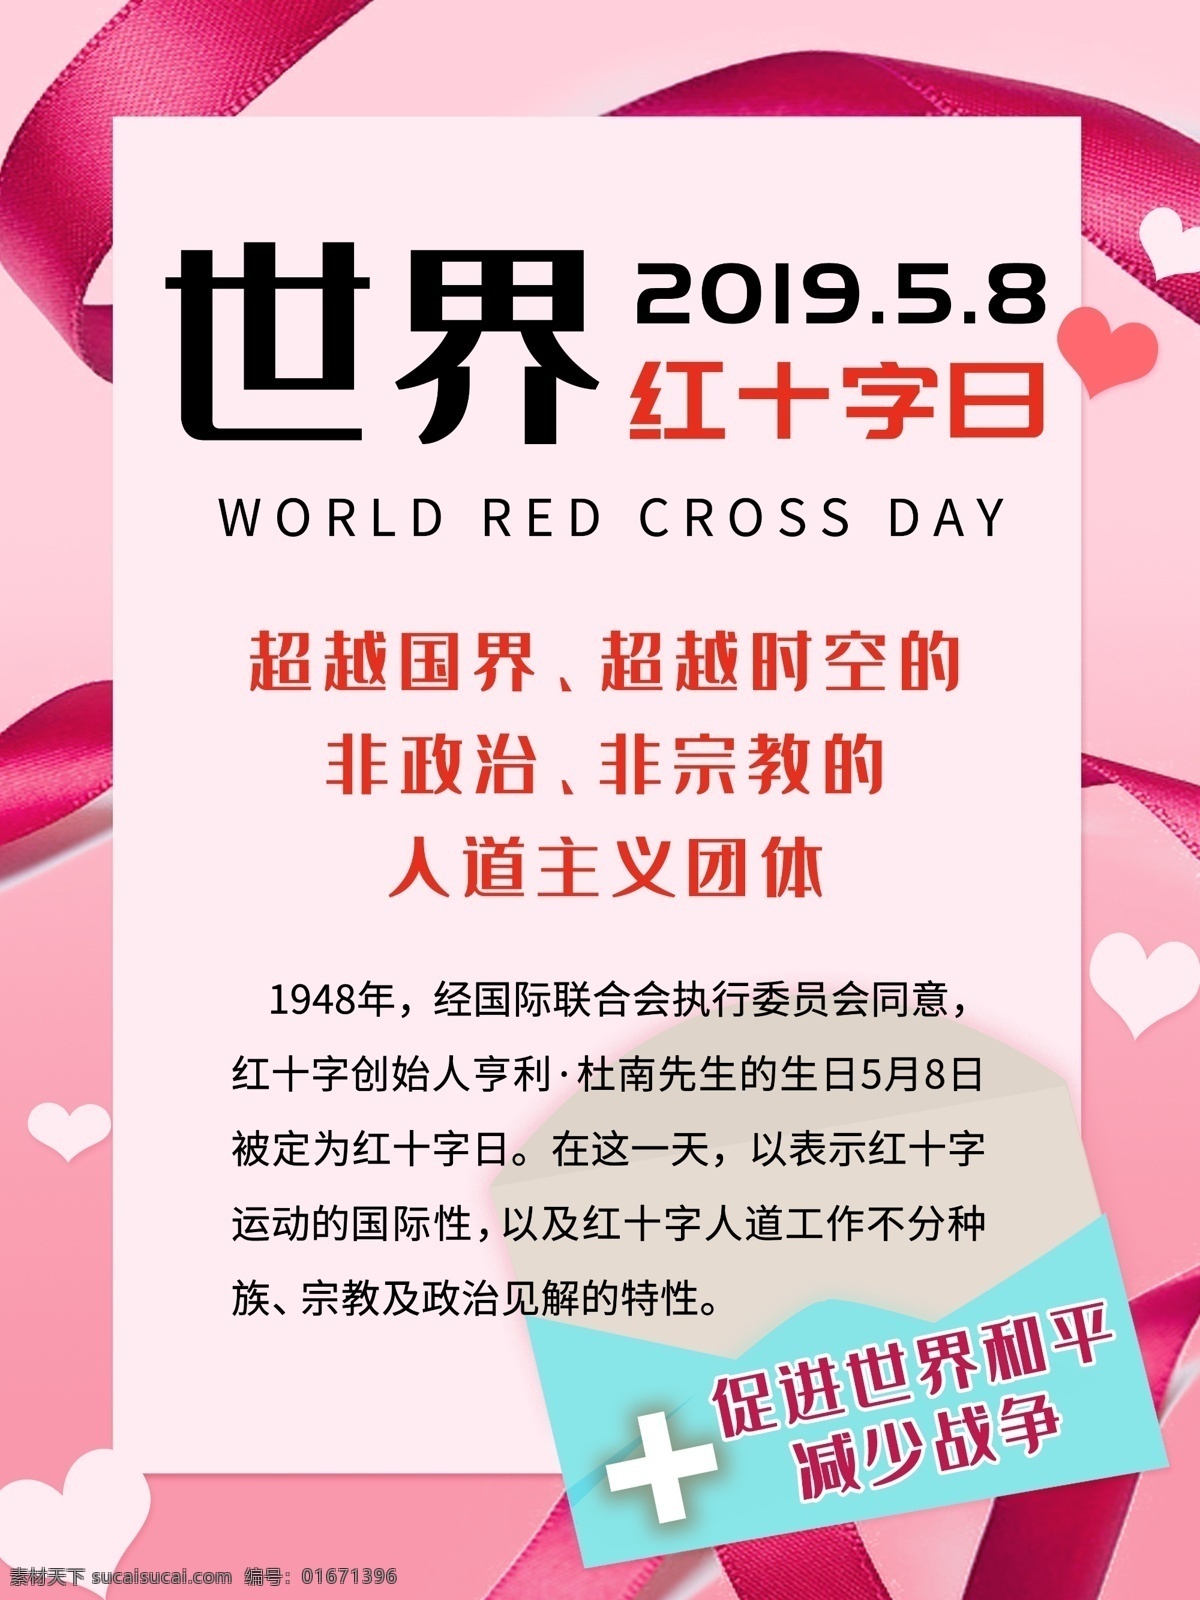 世界 红十字日 海报 红丝带 信封 医生 护士 医院 爱心 粉红 粉色 人道主义 和平